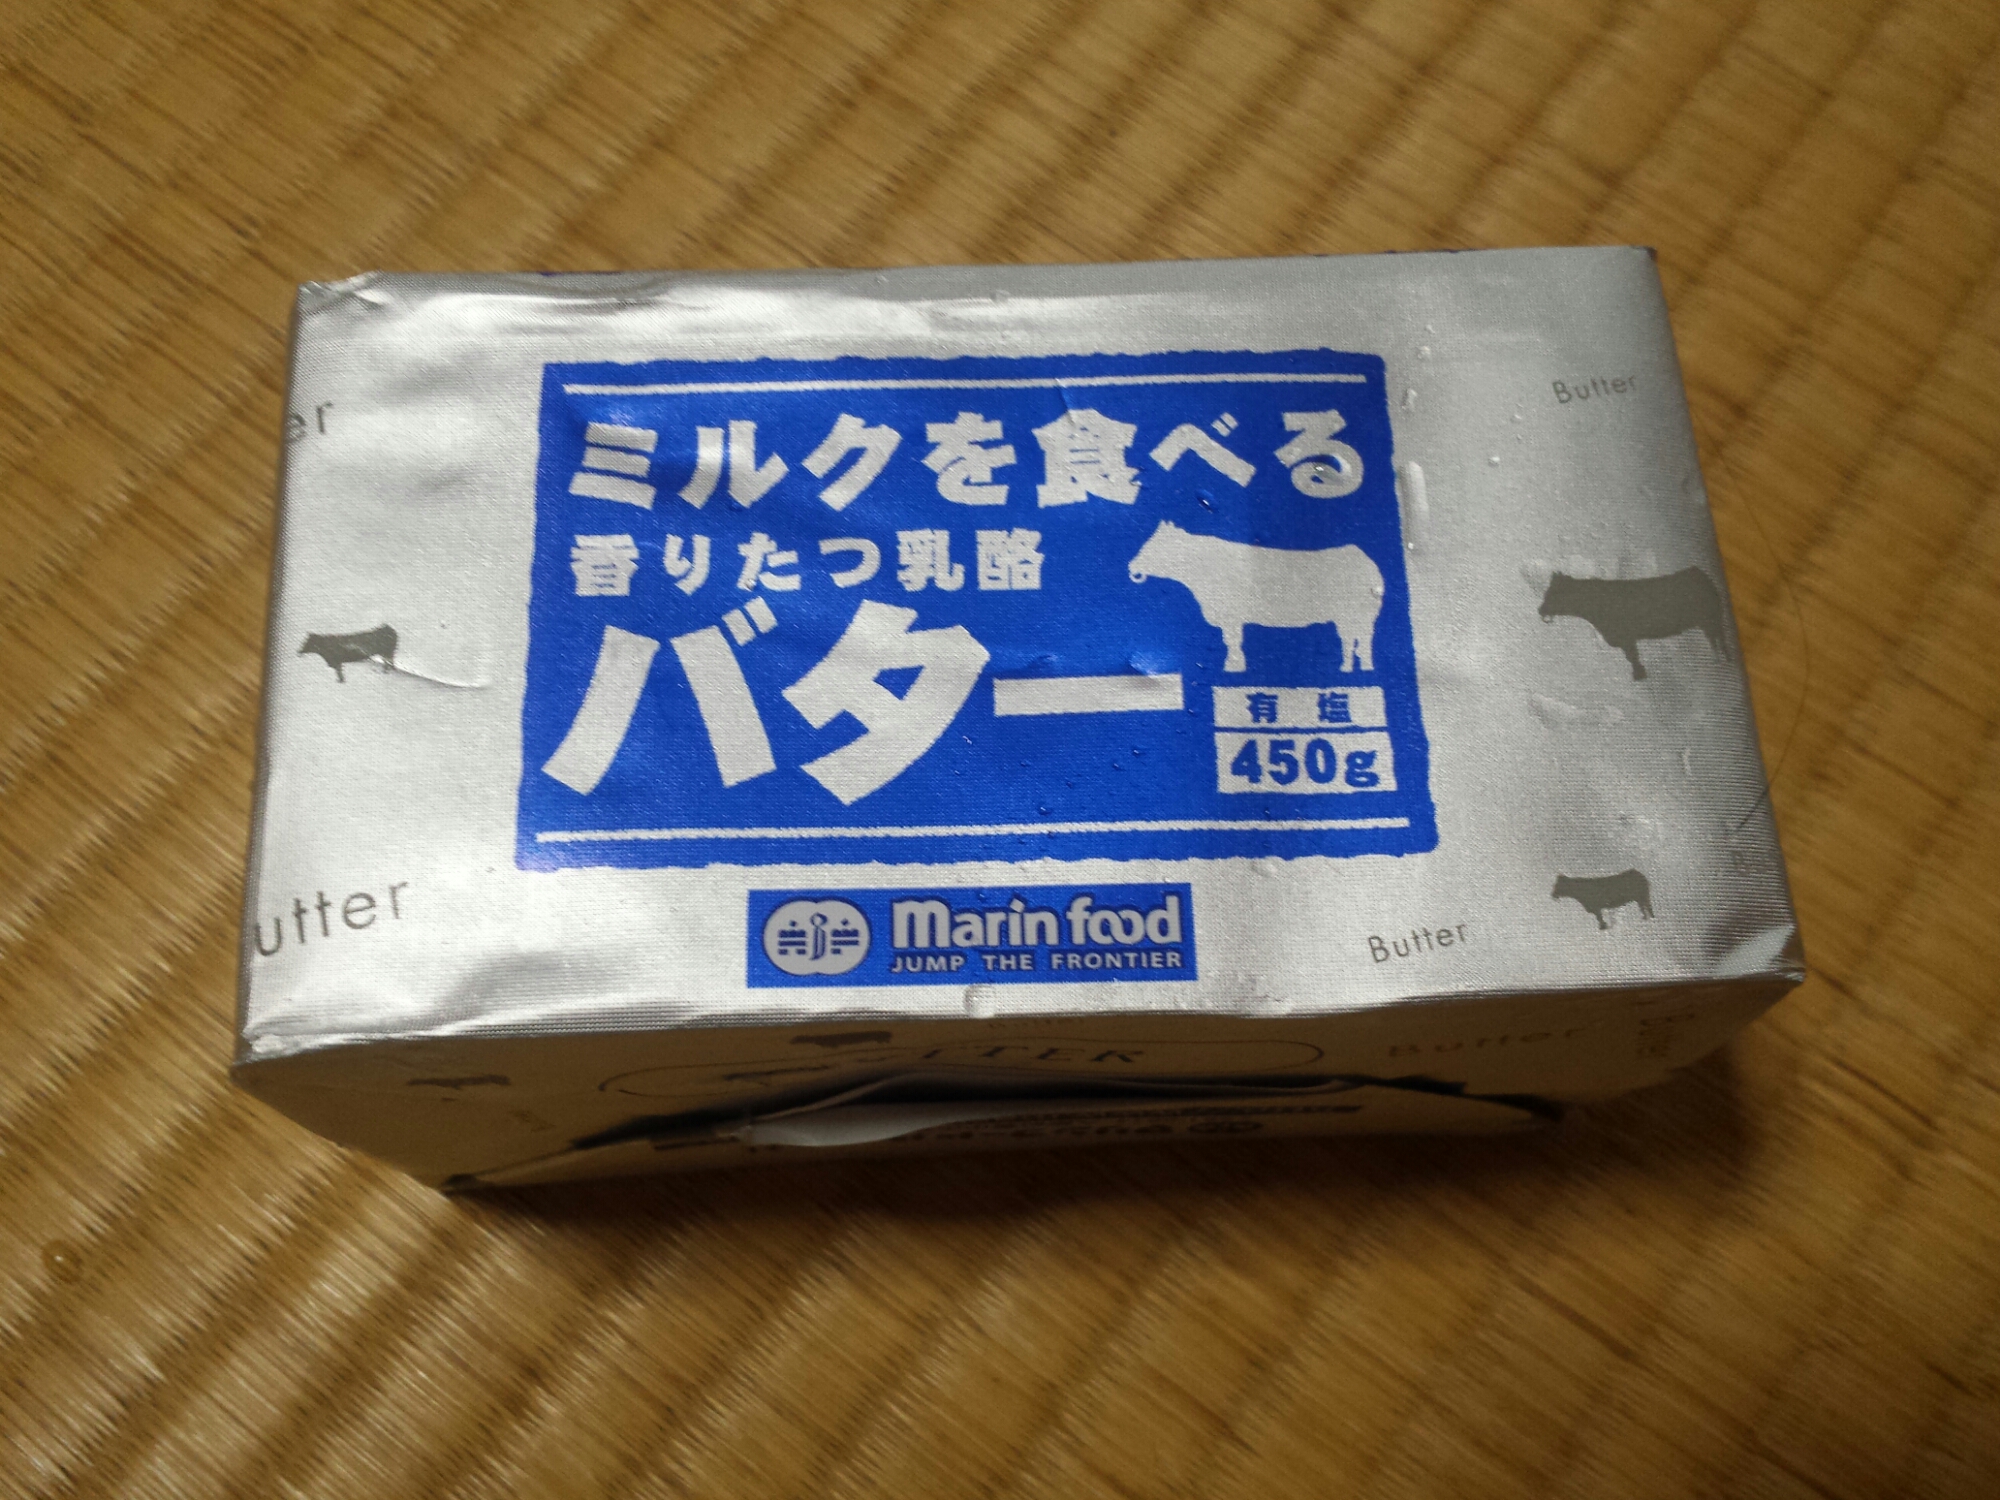 ミルクを食べる香りたつ乳酪バター☆コストコおすすめ商品☆ | kaireのブログ